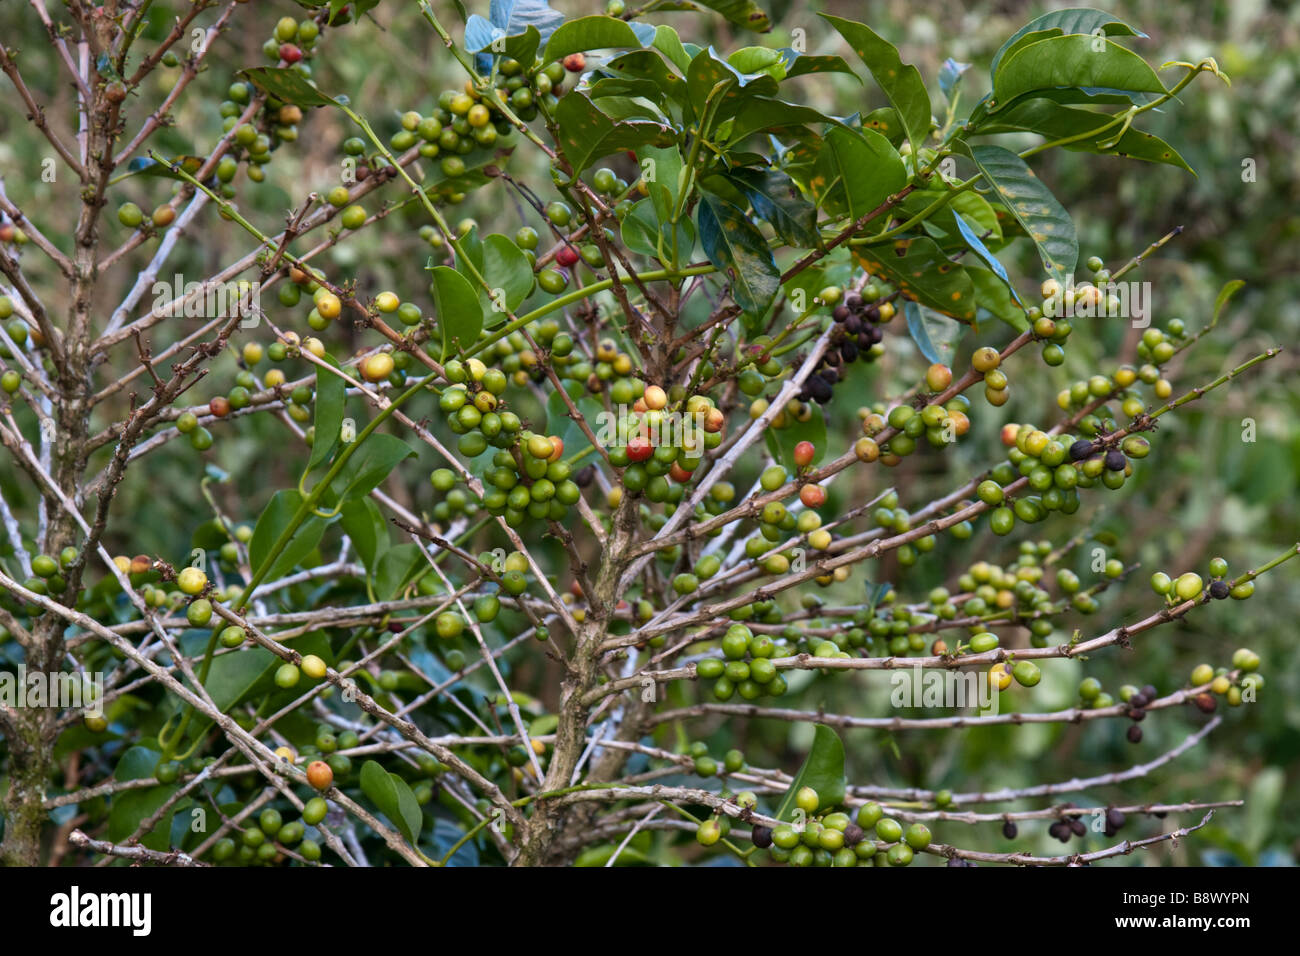 Les plantes de café avec des haricots. Boquete, province de Chiriqui, République du Panama Banque D'Images